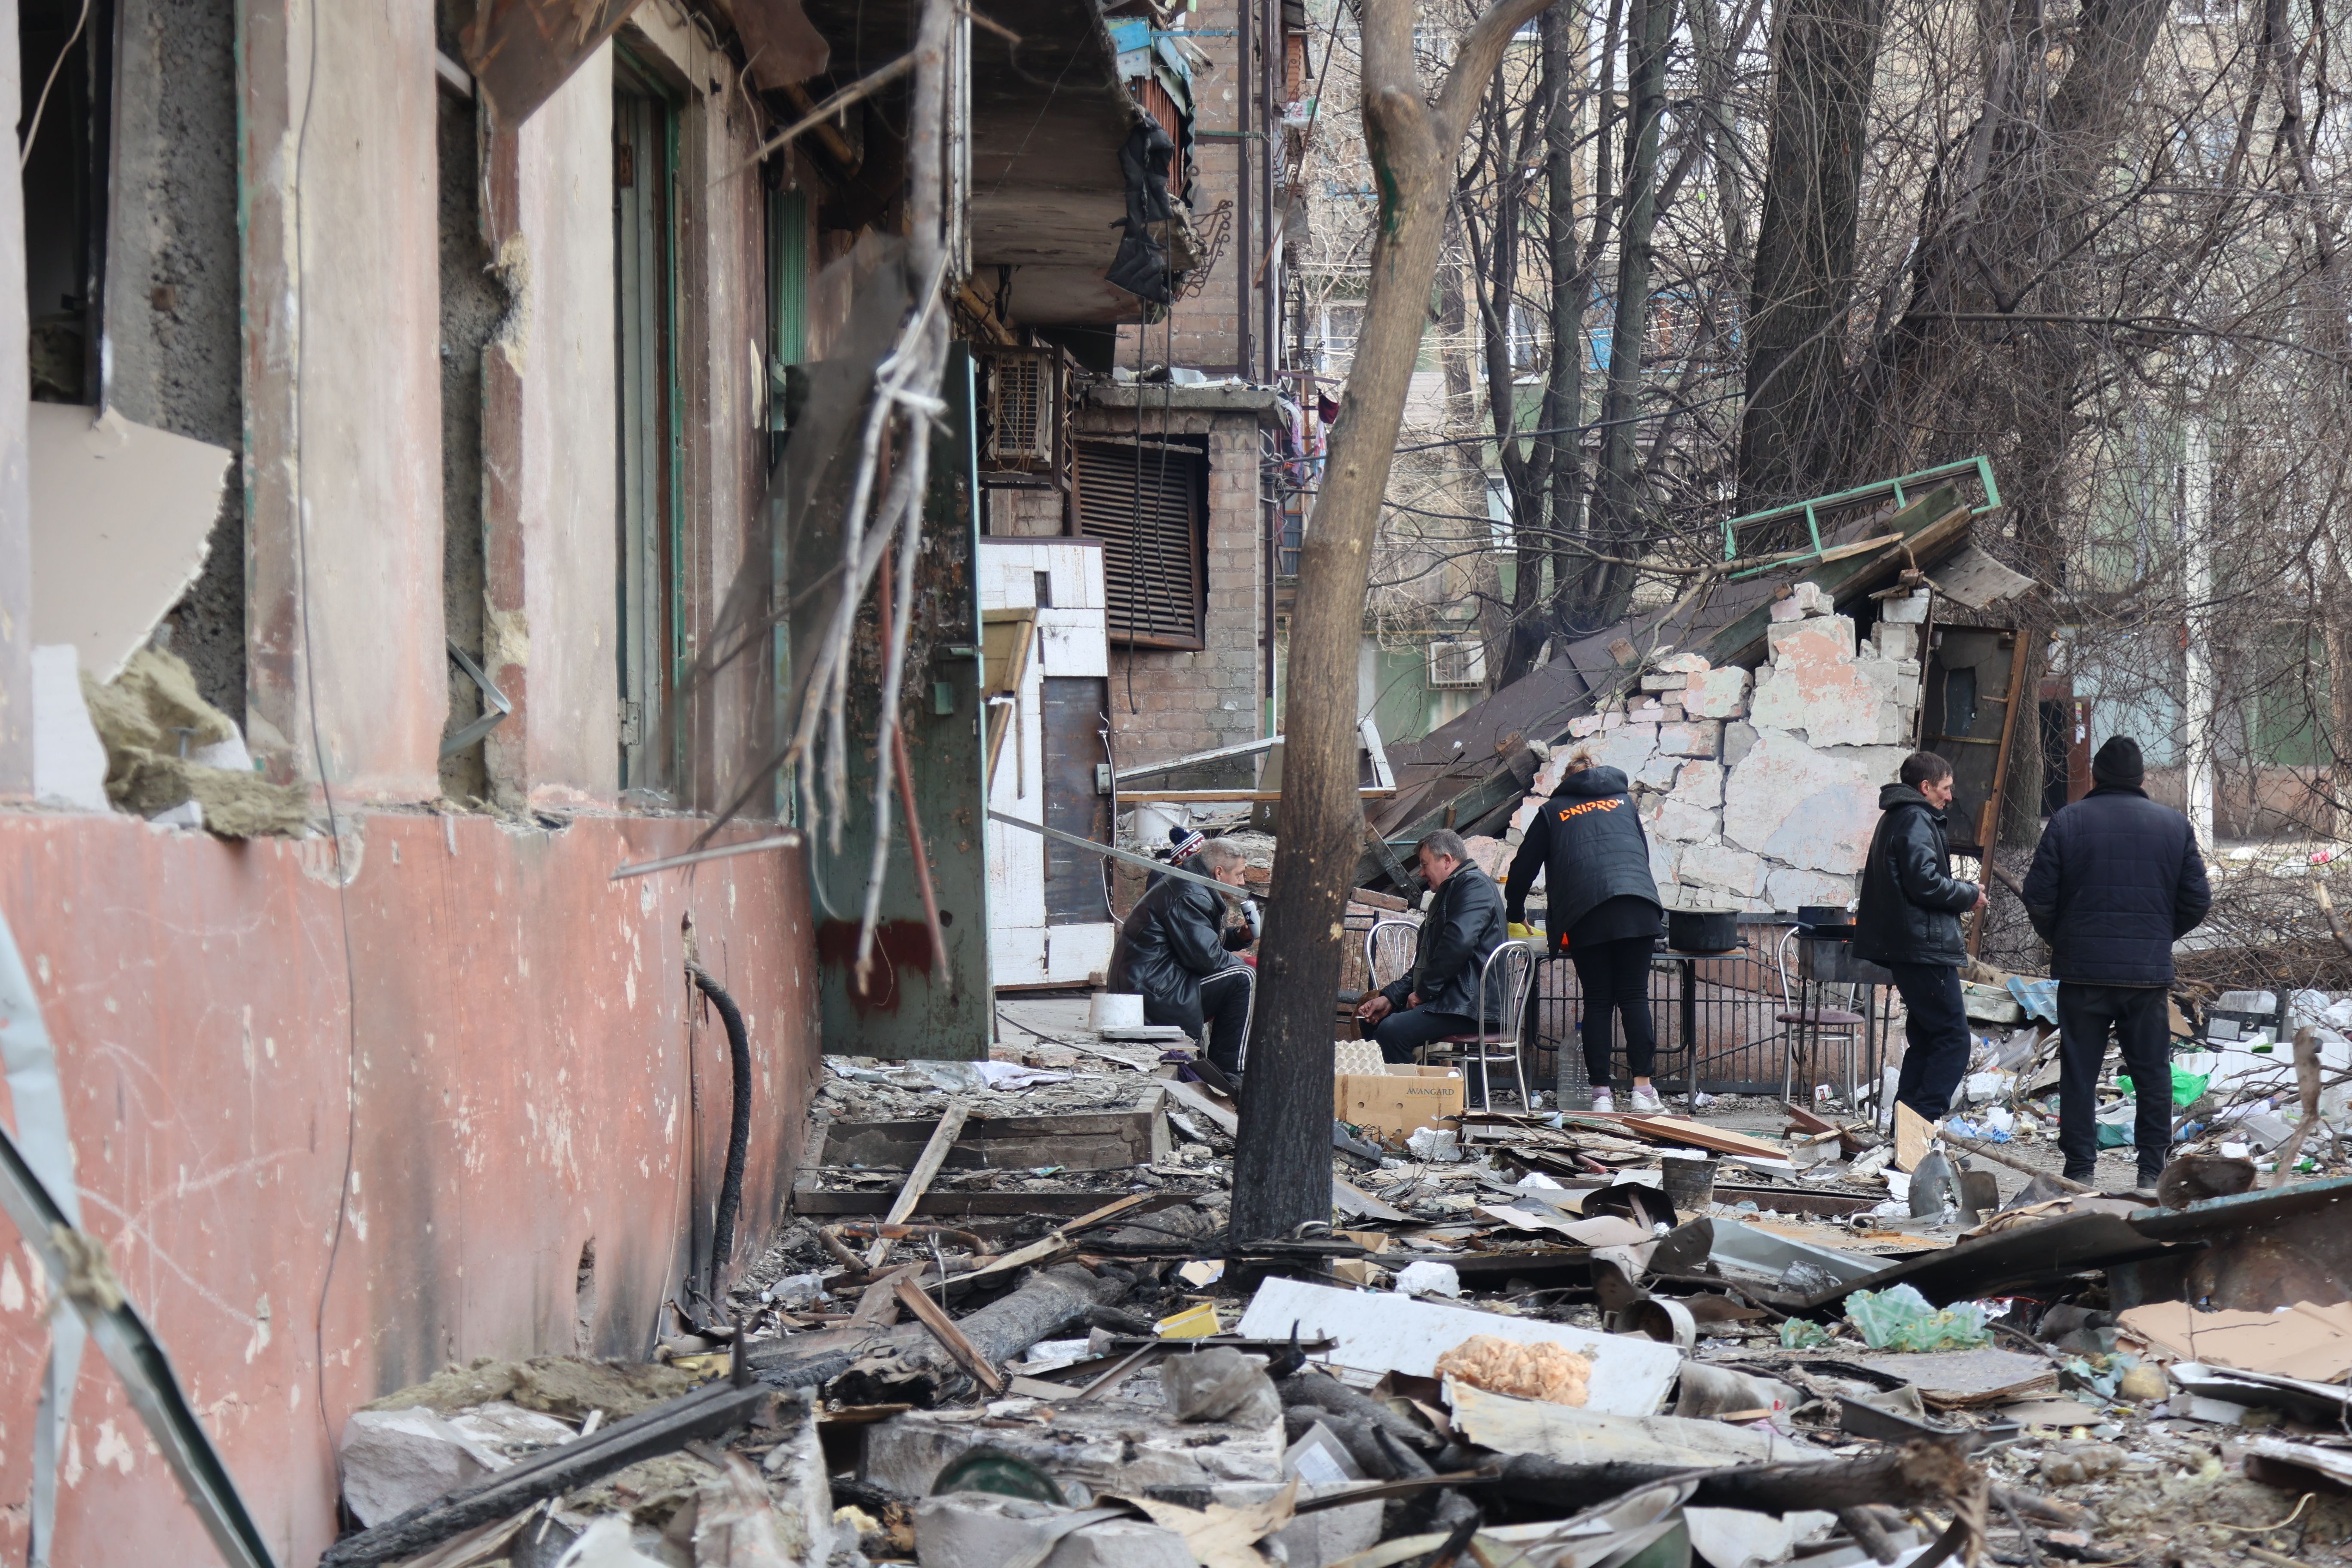     Een blik op beschadigde gebouwen en voertuigen na de bomaanslag op de Oekraïense stad Mariupol, die onder controle staat van het Russische leger en pro-Russische separatisten, op 29 maart.